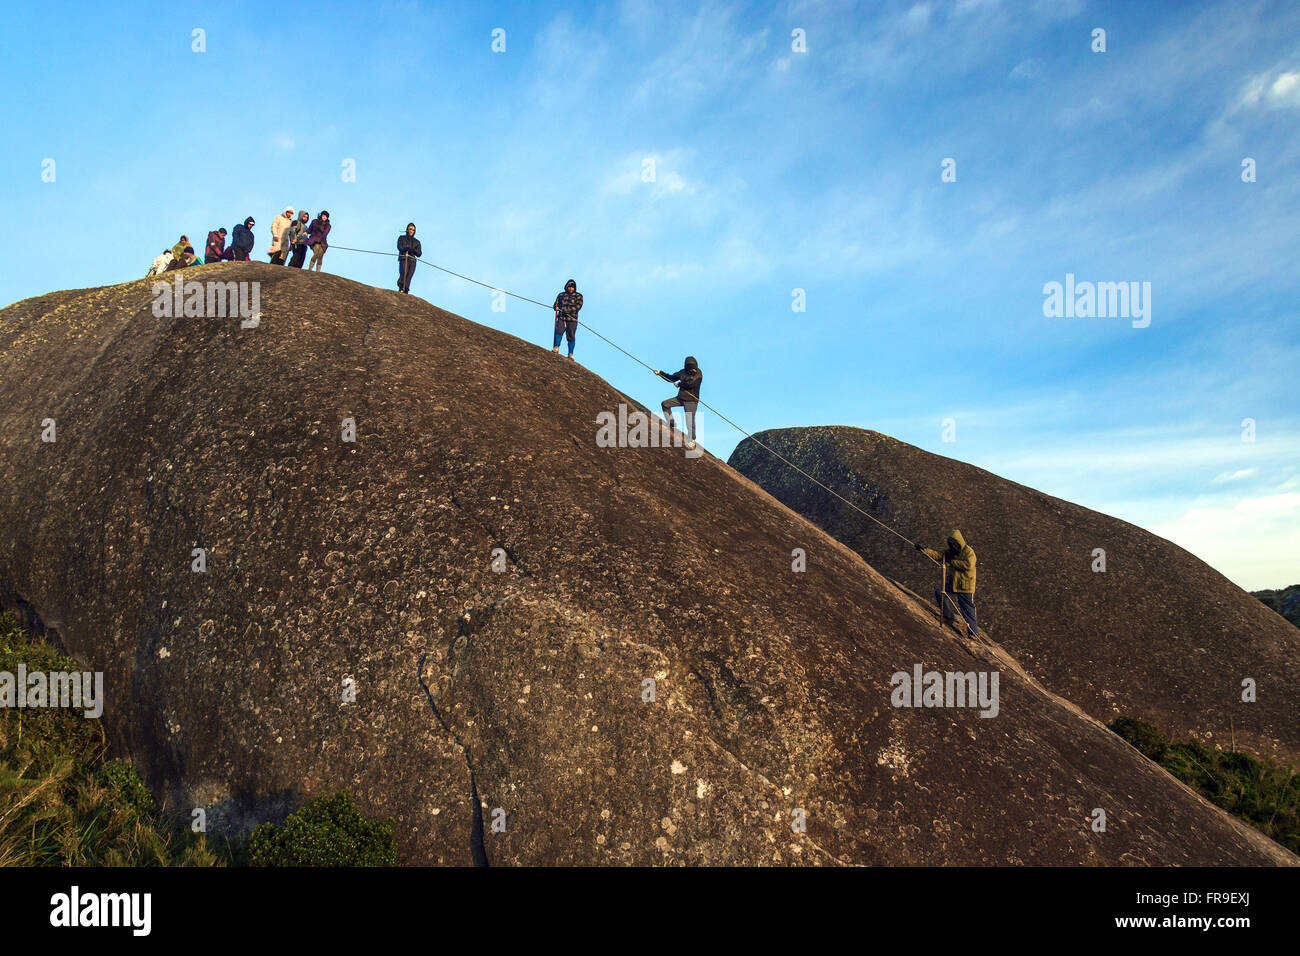 Groupe d'alpinistes grimper sur un rocher dans le Parc National de la Sierra d'organes Banque D'Images